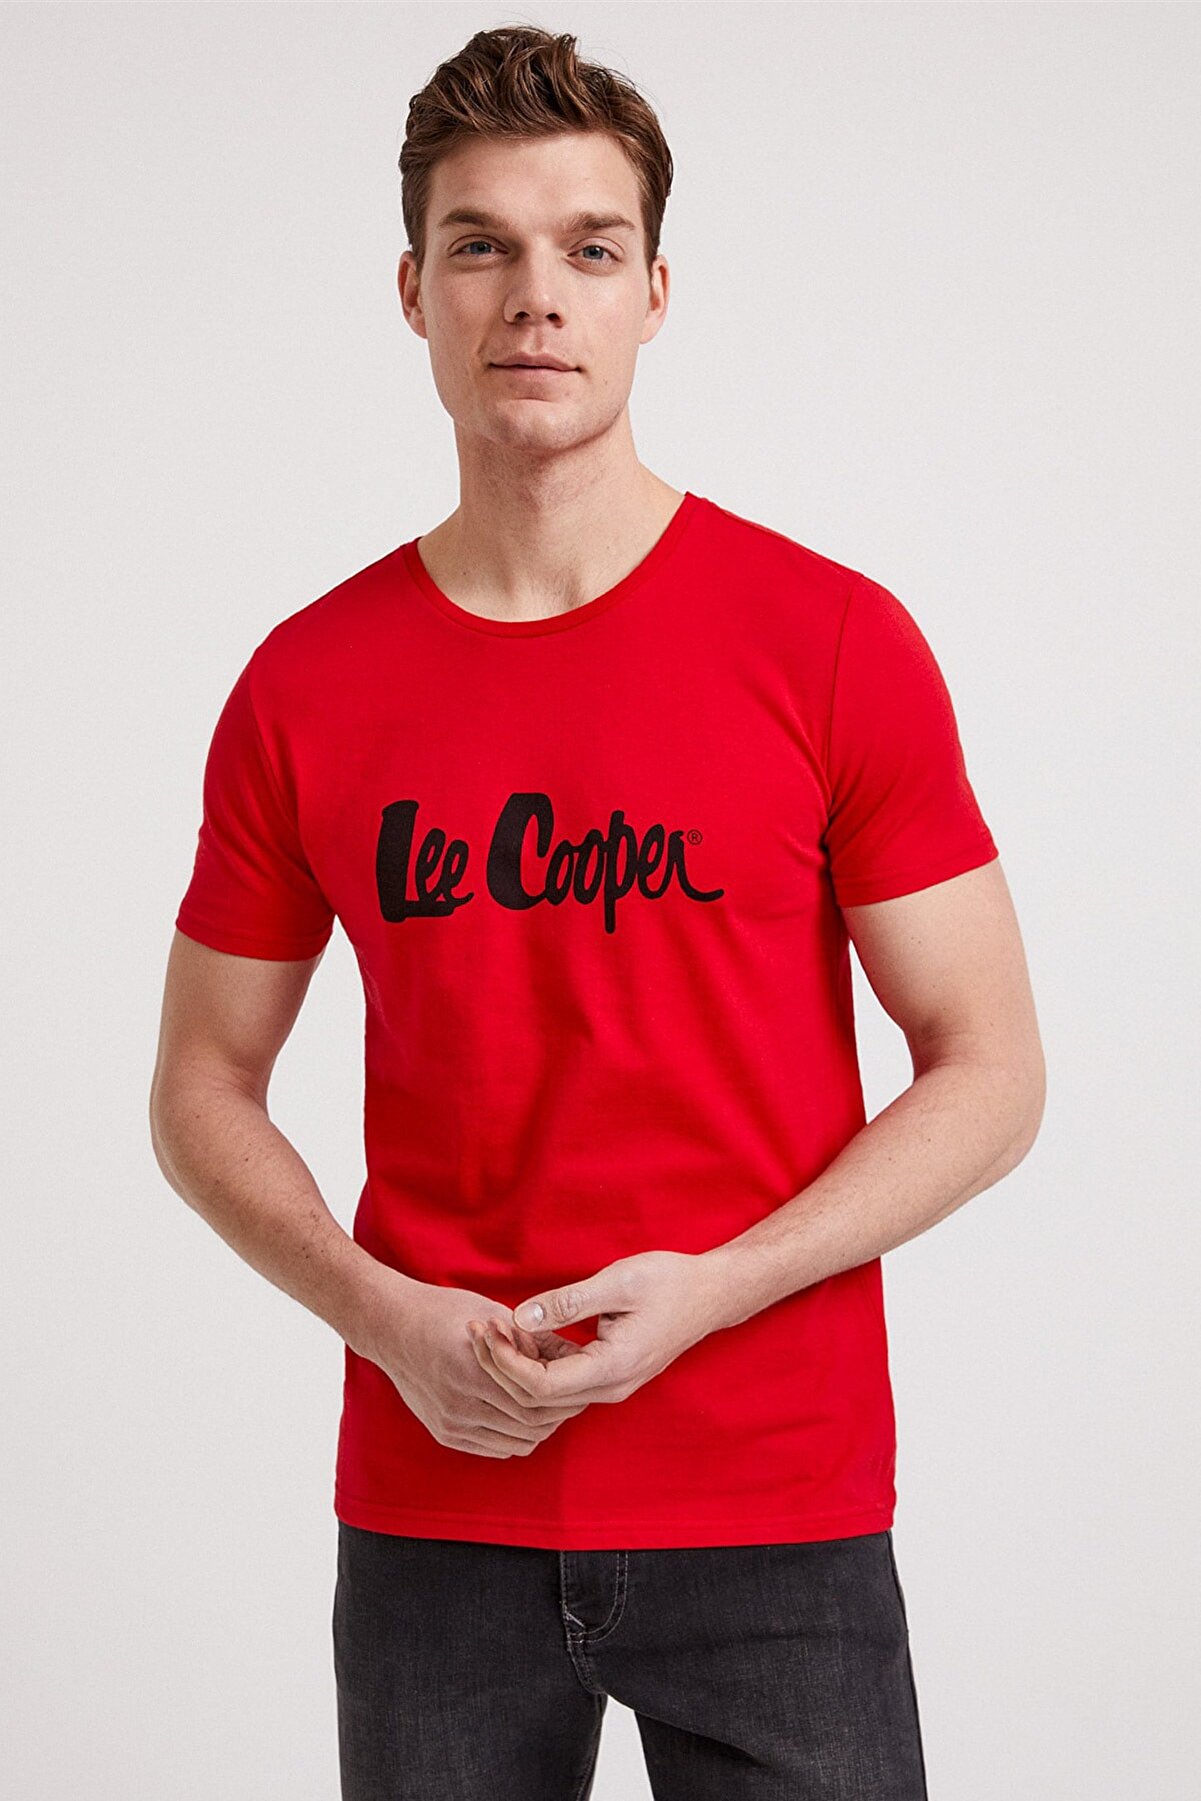 Lee Cooper Erkek Londonlogo O Yaka T-Shirt Kırmızı 202 LCM 242011